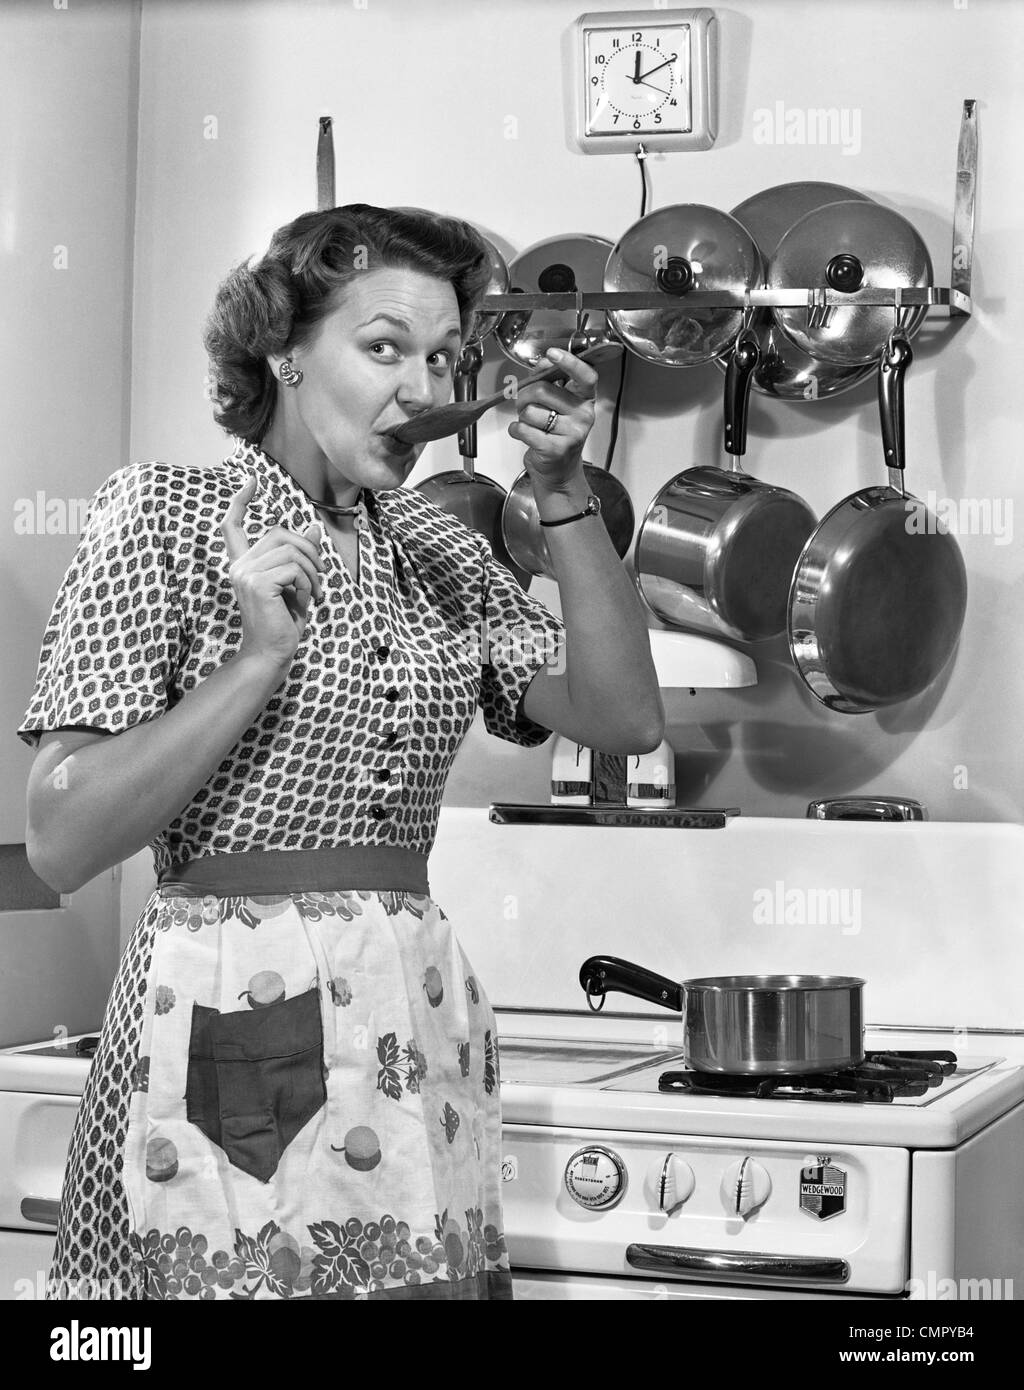 1950 Dégustation de femme au foyer avec cuillère par l'EXPRESSION DU VISAGE DRÔLE Cuisinière Banque D'Images